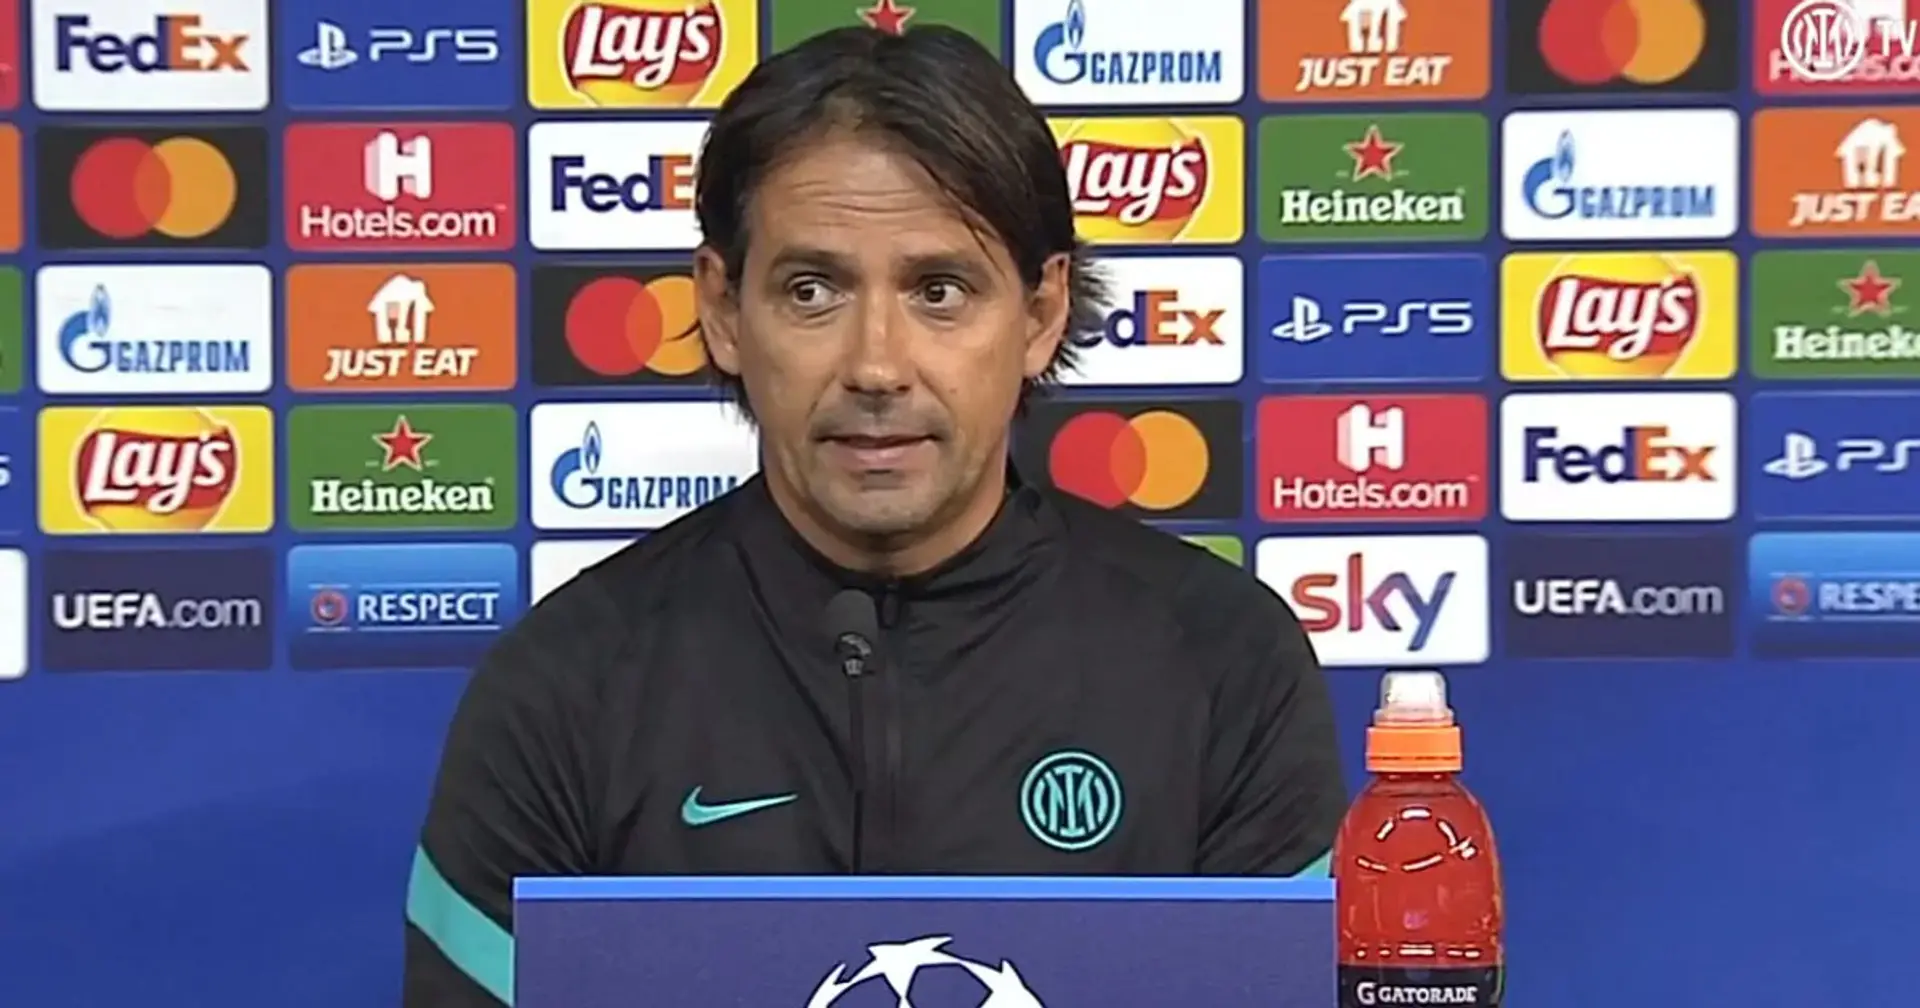 "Qualcosa cambierò", Inzaghi annuncia qualche cambio e sottolinea le insidie della gara con la Real Sociedad